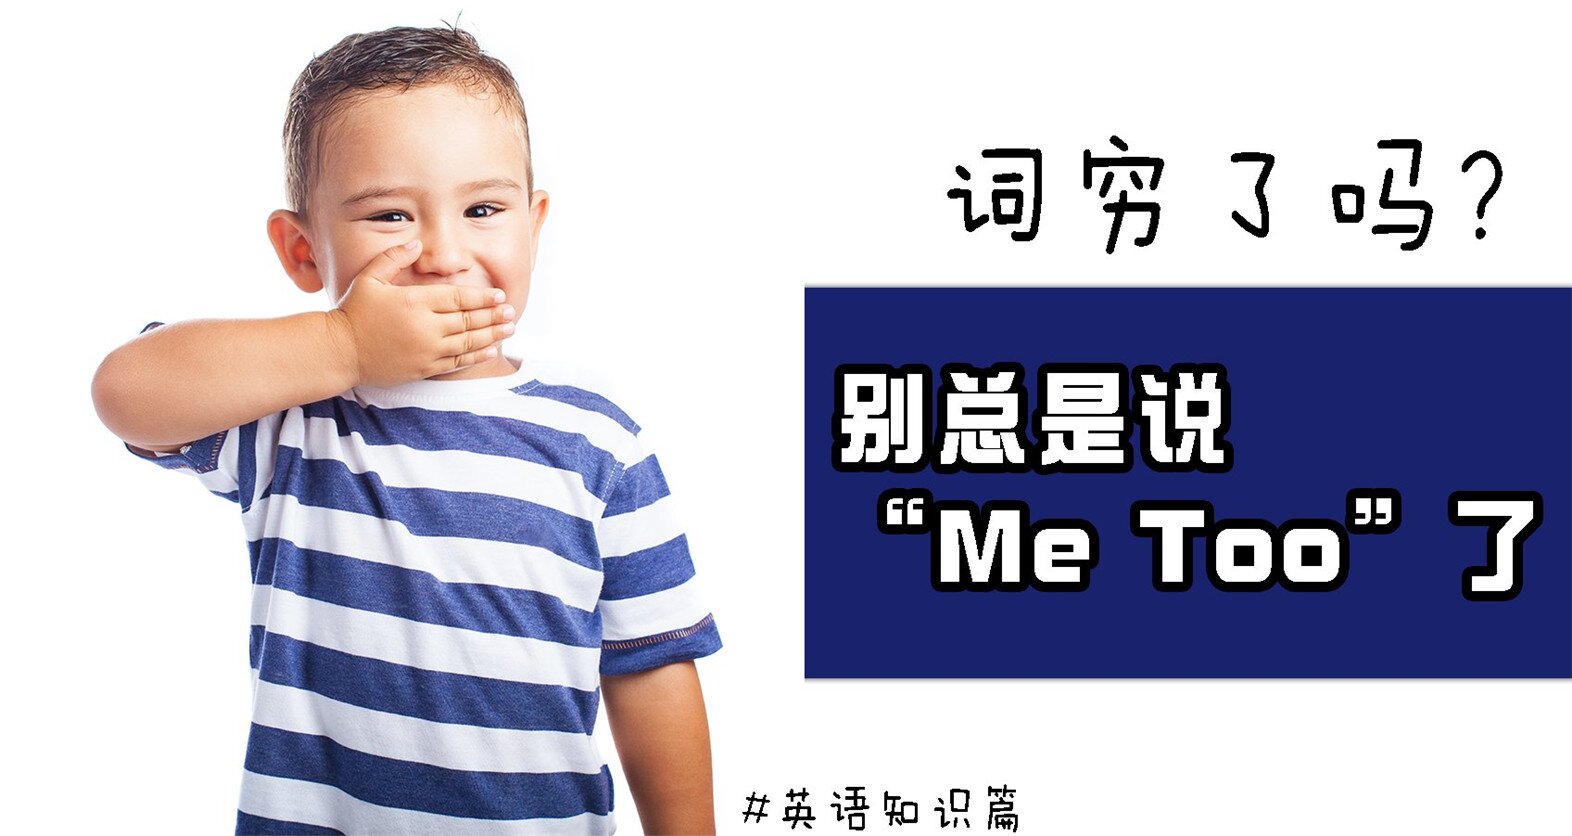 更多表达“Me Too”的说法 让你的英语更地道